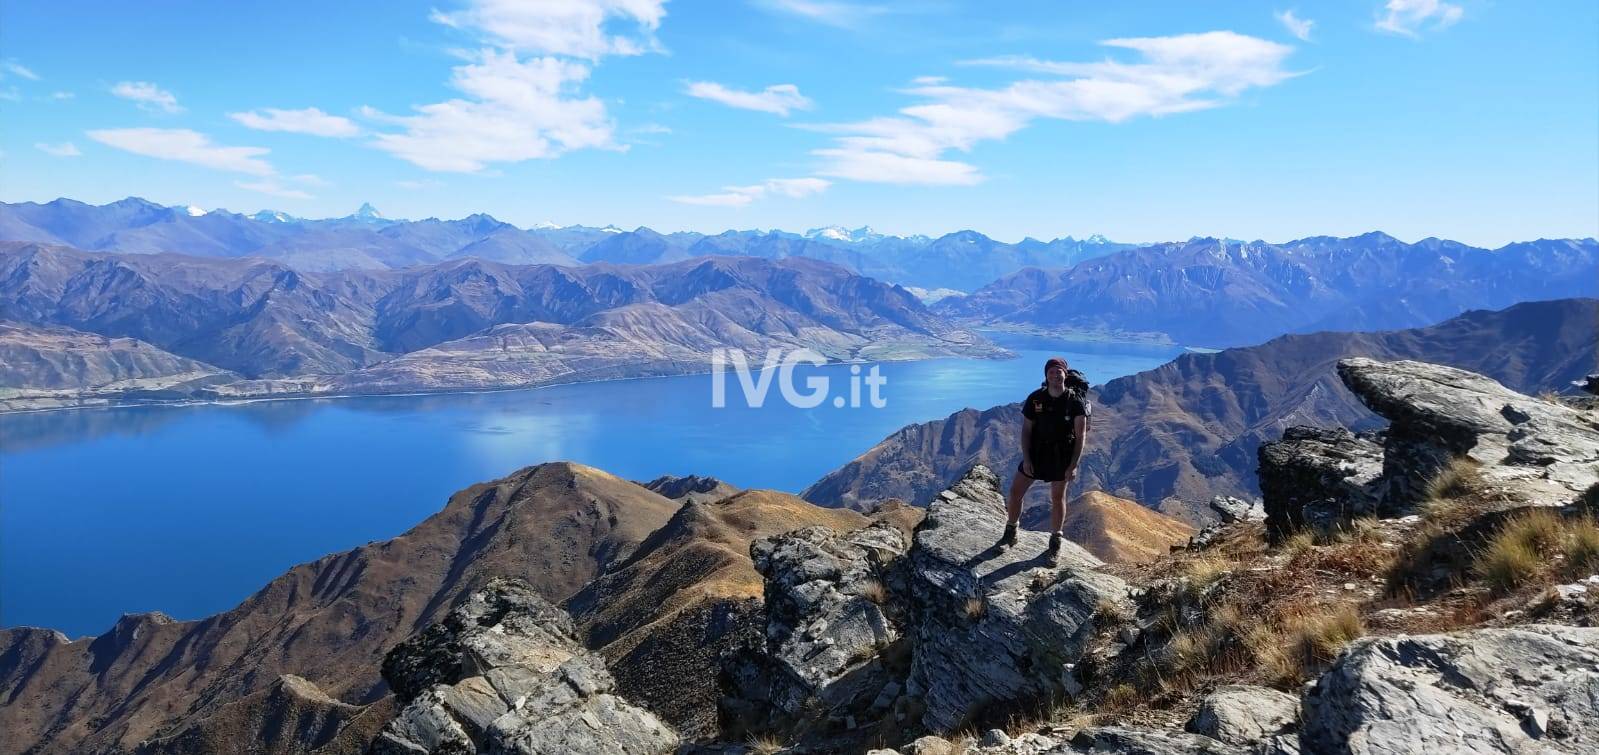 Traversata in solitaria a piedi della Nuova Zelanda: il 21enne di Loano Andrea Cibrario completa l’isola del Sud